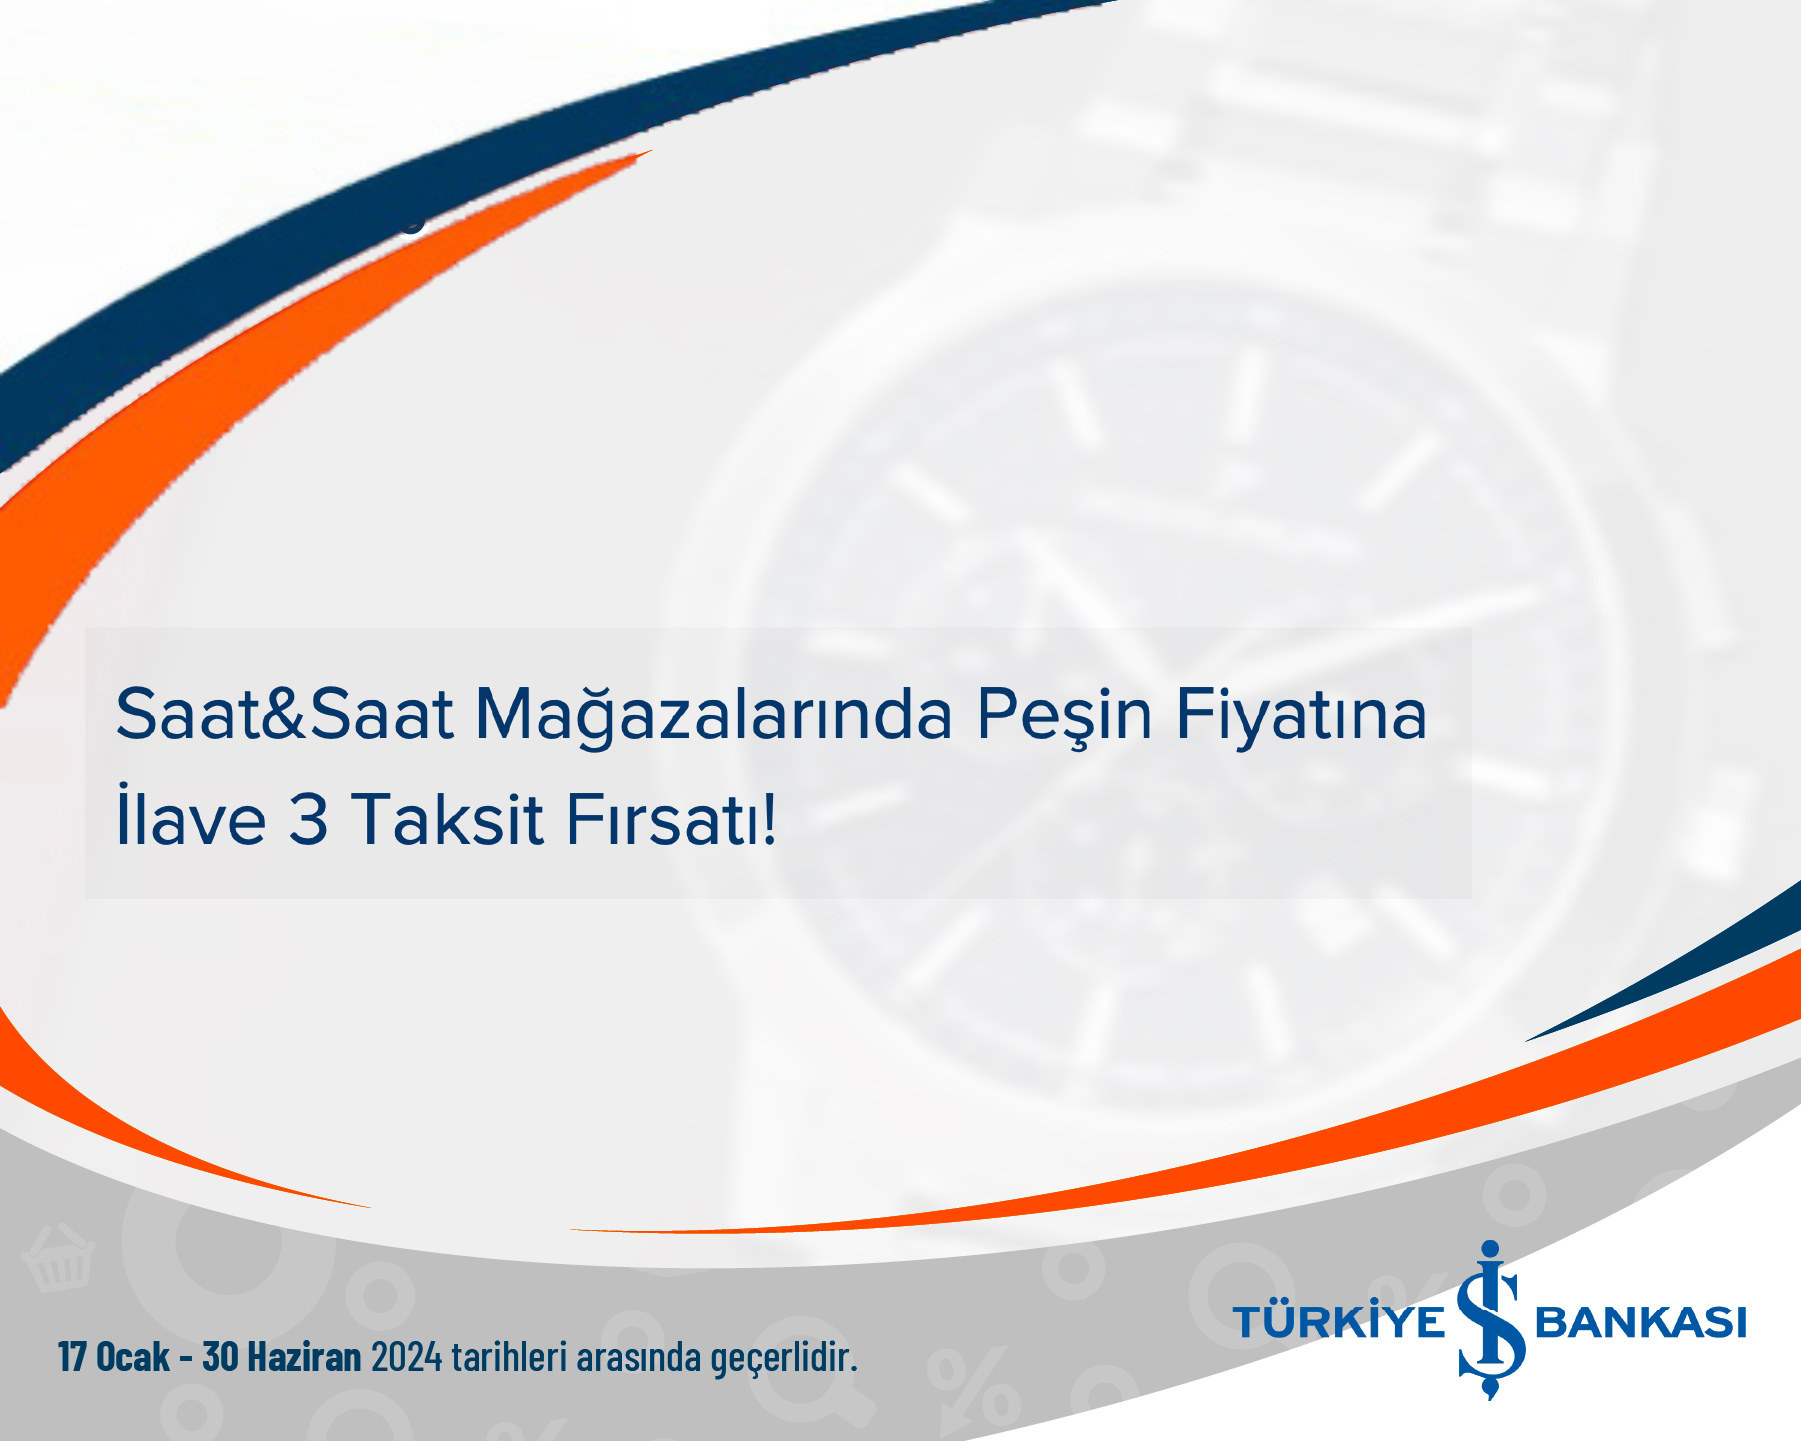 Türkiye İş Bankası Saat&Saat Mağazalarında Peşin Fiyatına İlave 3 Taksit Fırsatı!